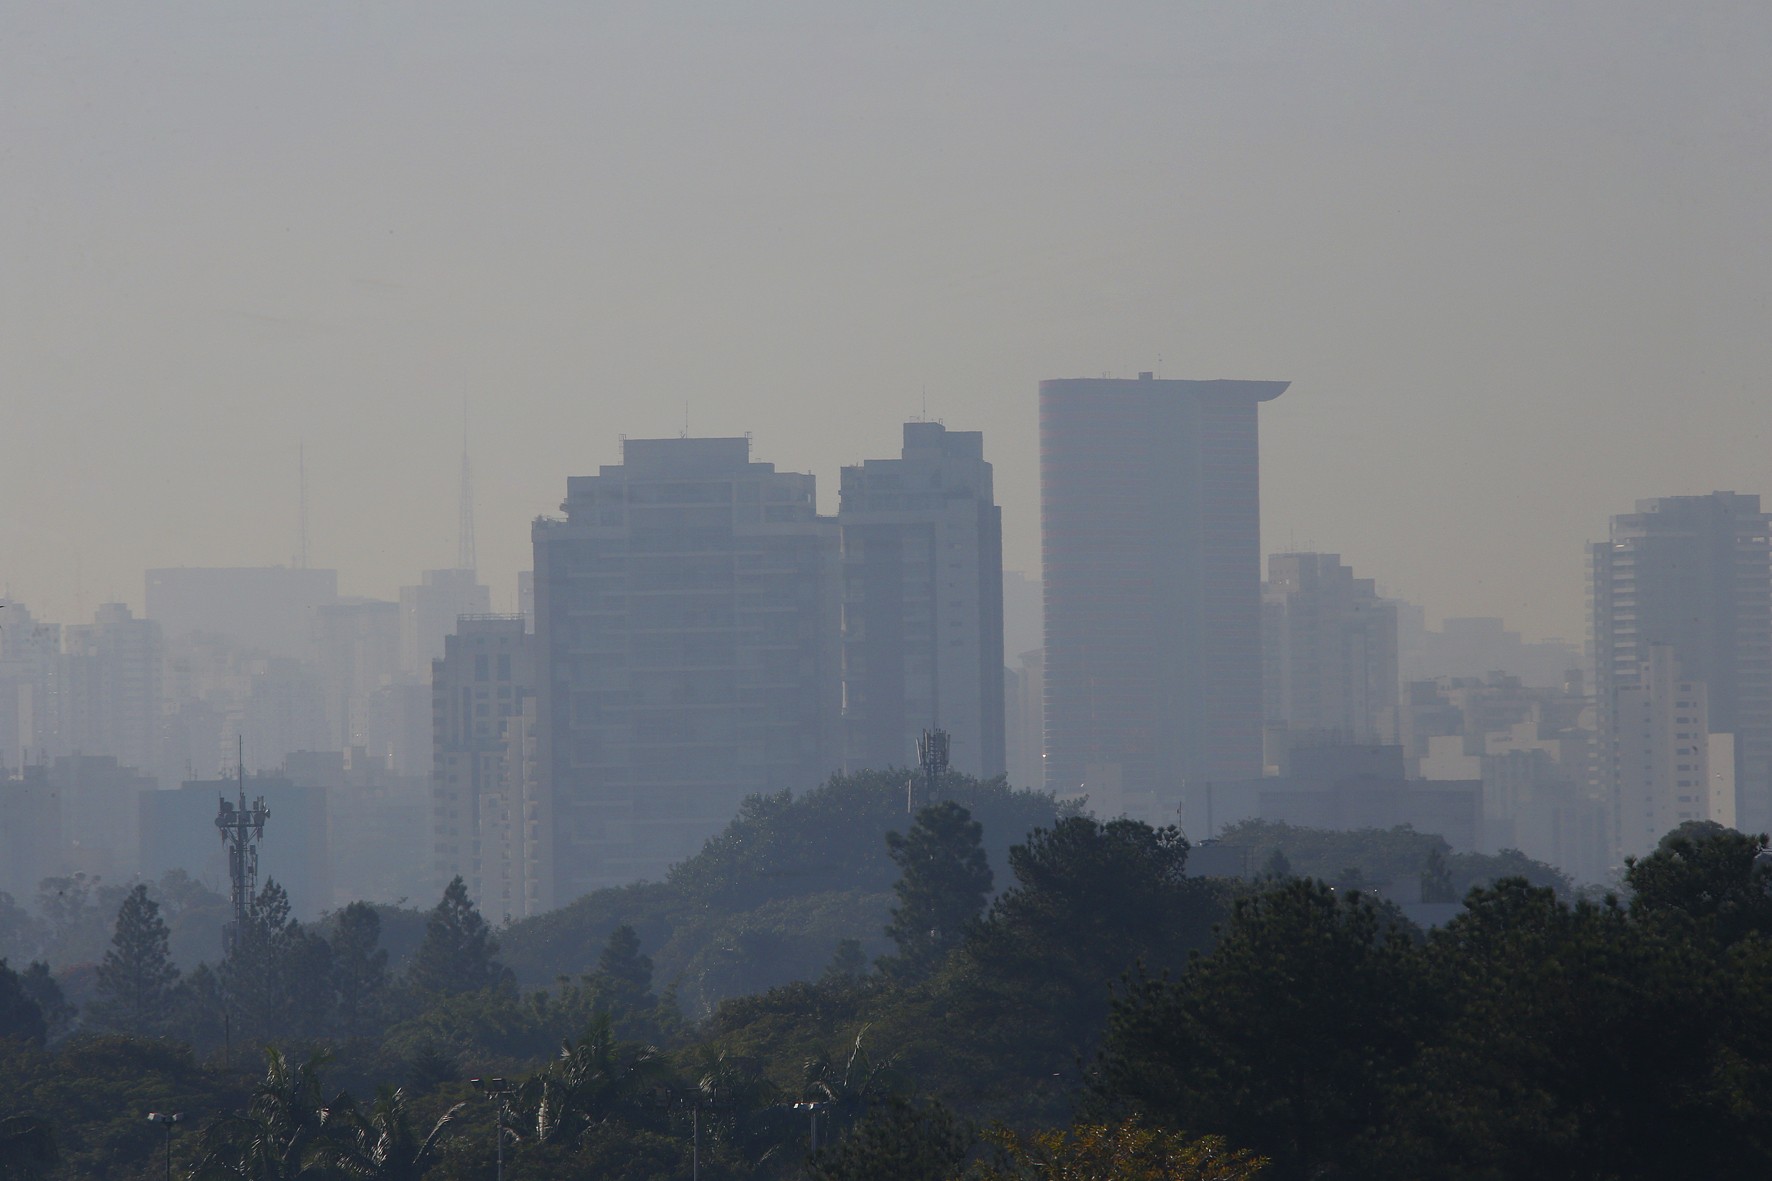 Brasileiros desconhecem qualidade do ar, mostra relatório. Na imagem, poluição na cidade de São Paulo (Foto: Marcos Santos/USP Imagens)